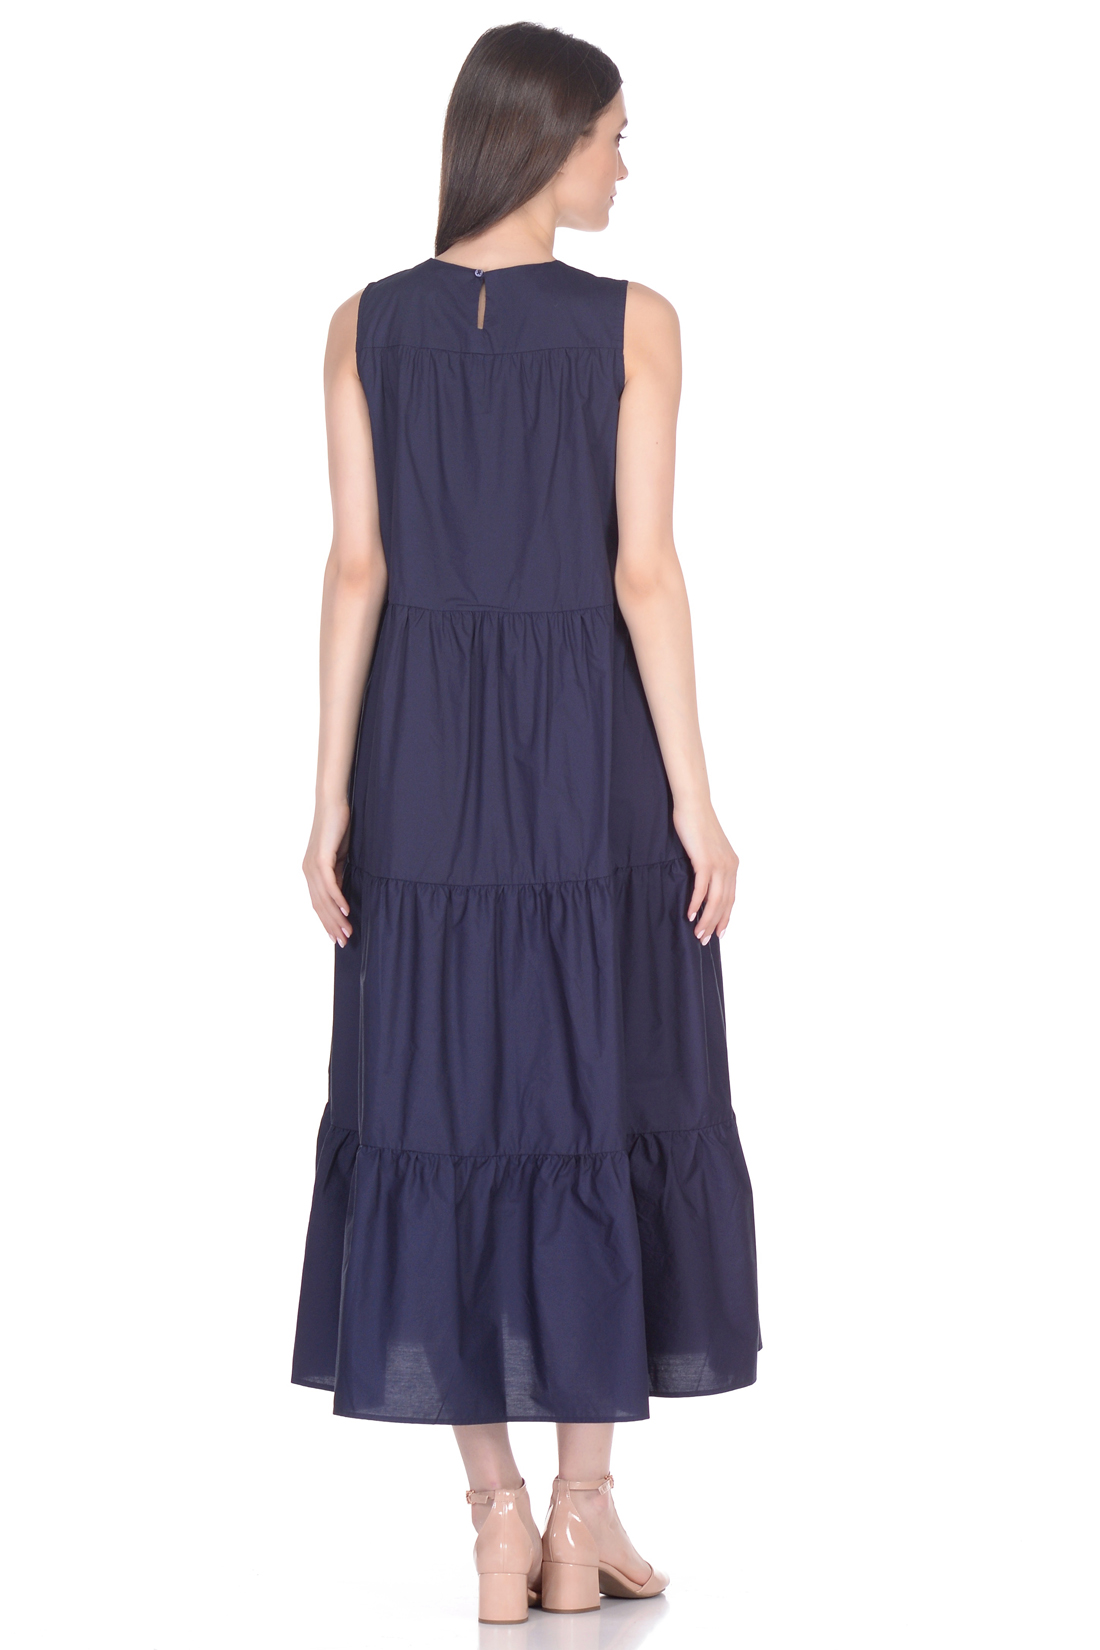 Ярусное платье из хлопка (арт. baon B458062), размер S, цвет синий Ярусное платье из хлопка (арт. baon B458062) - фото 2